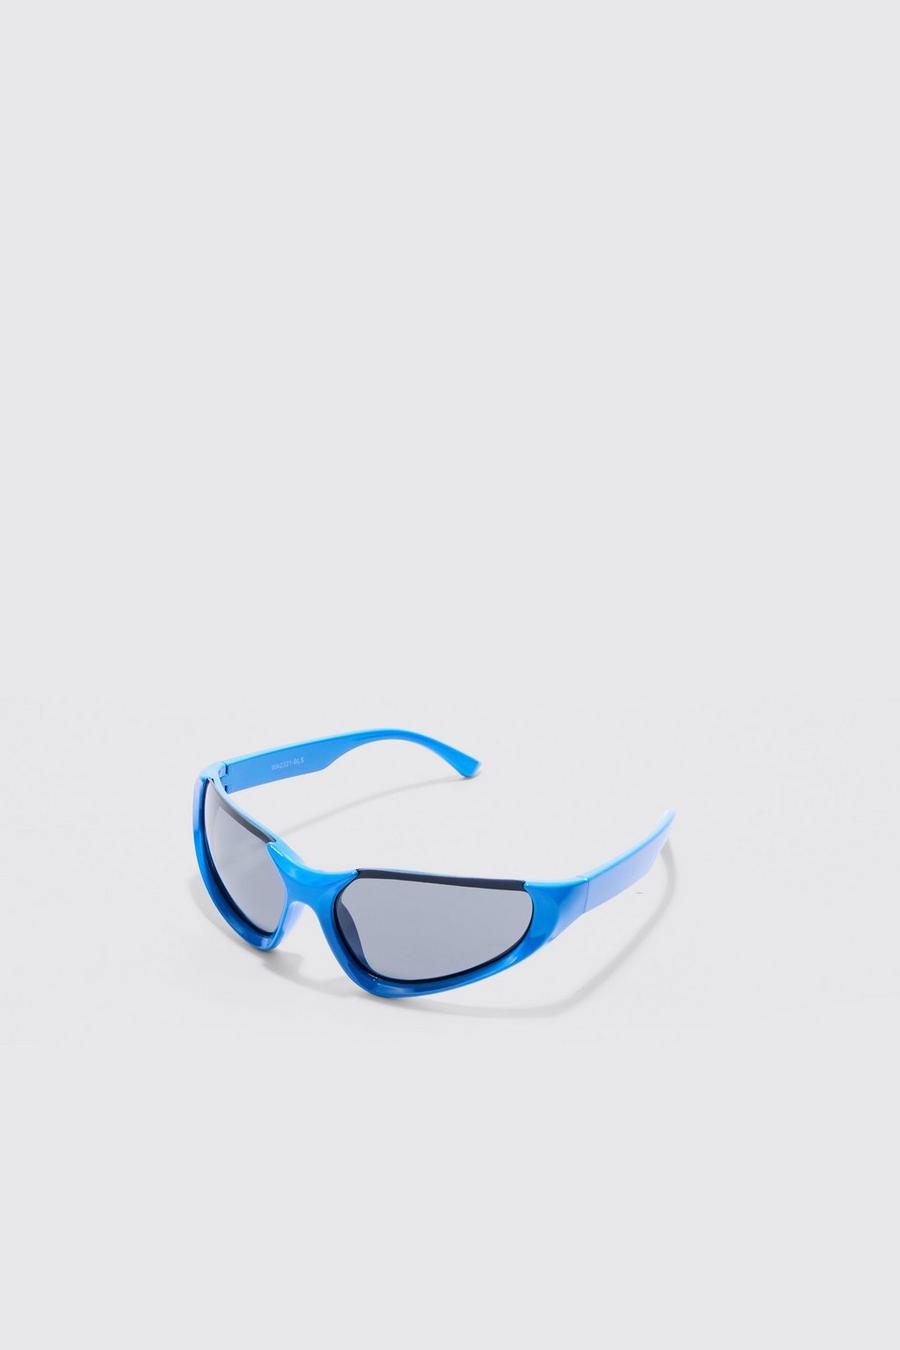 Gafas de sol estilo nadador sin montura, Blue